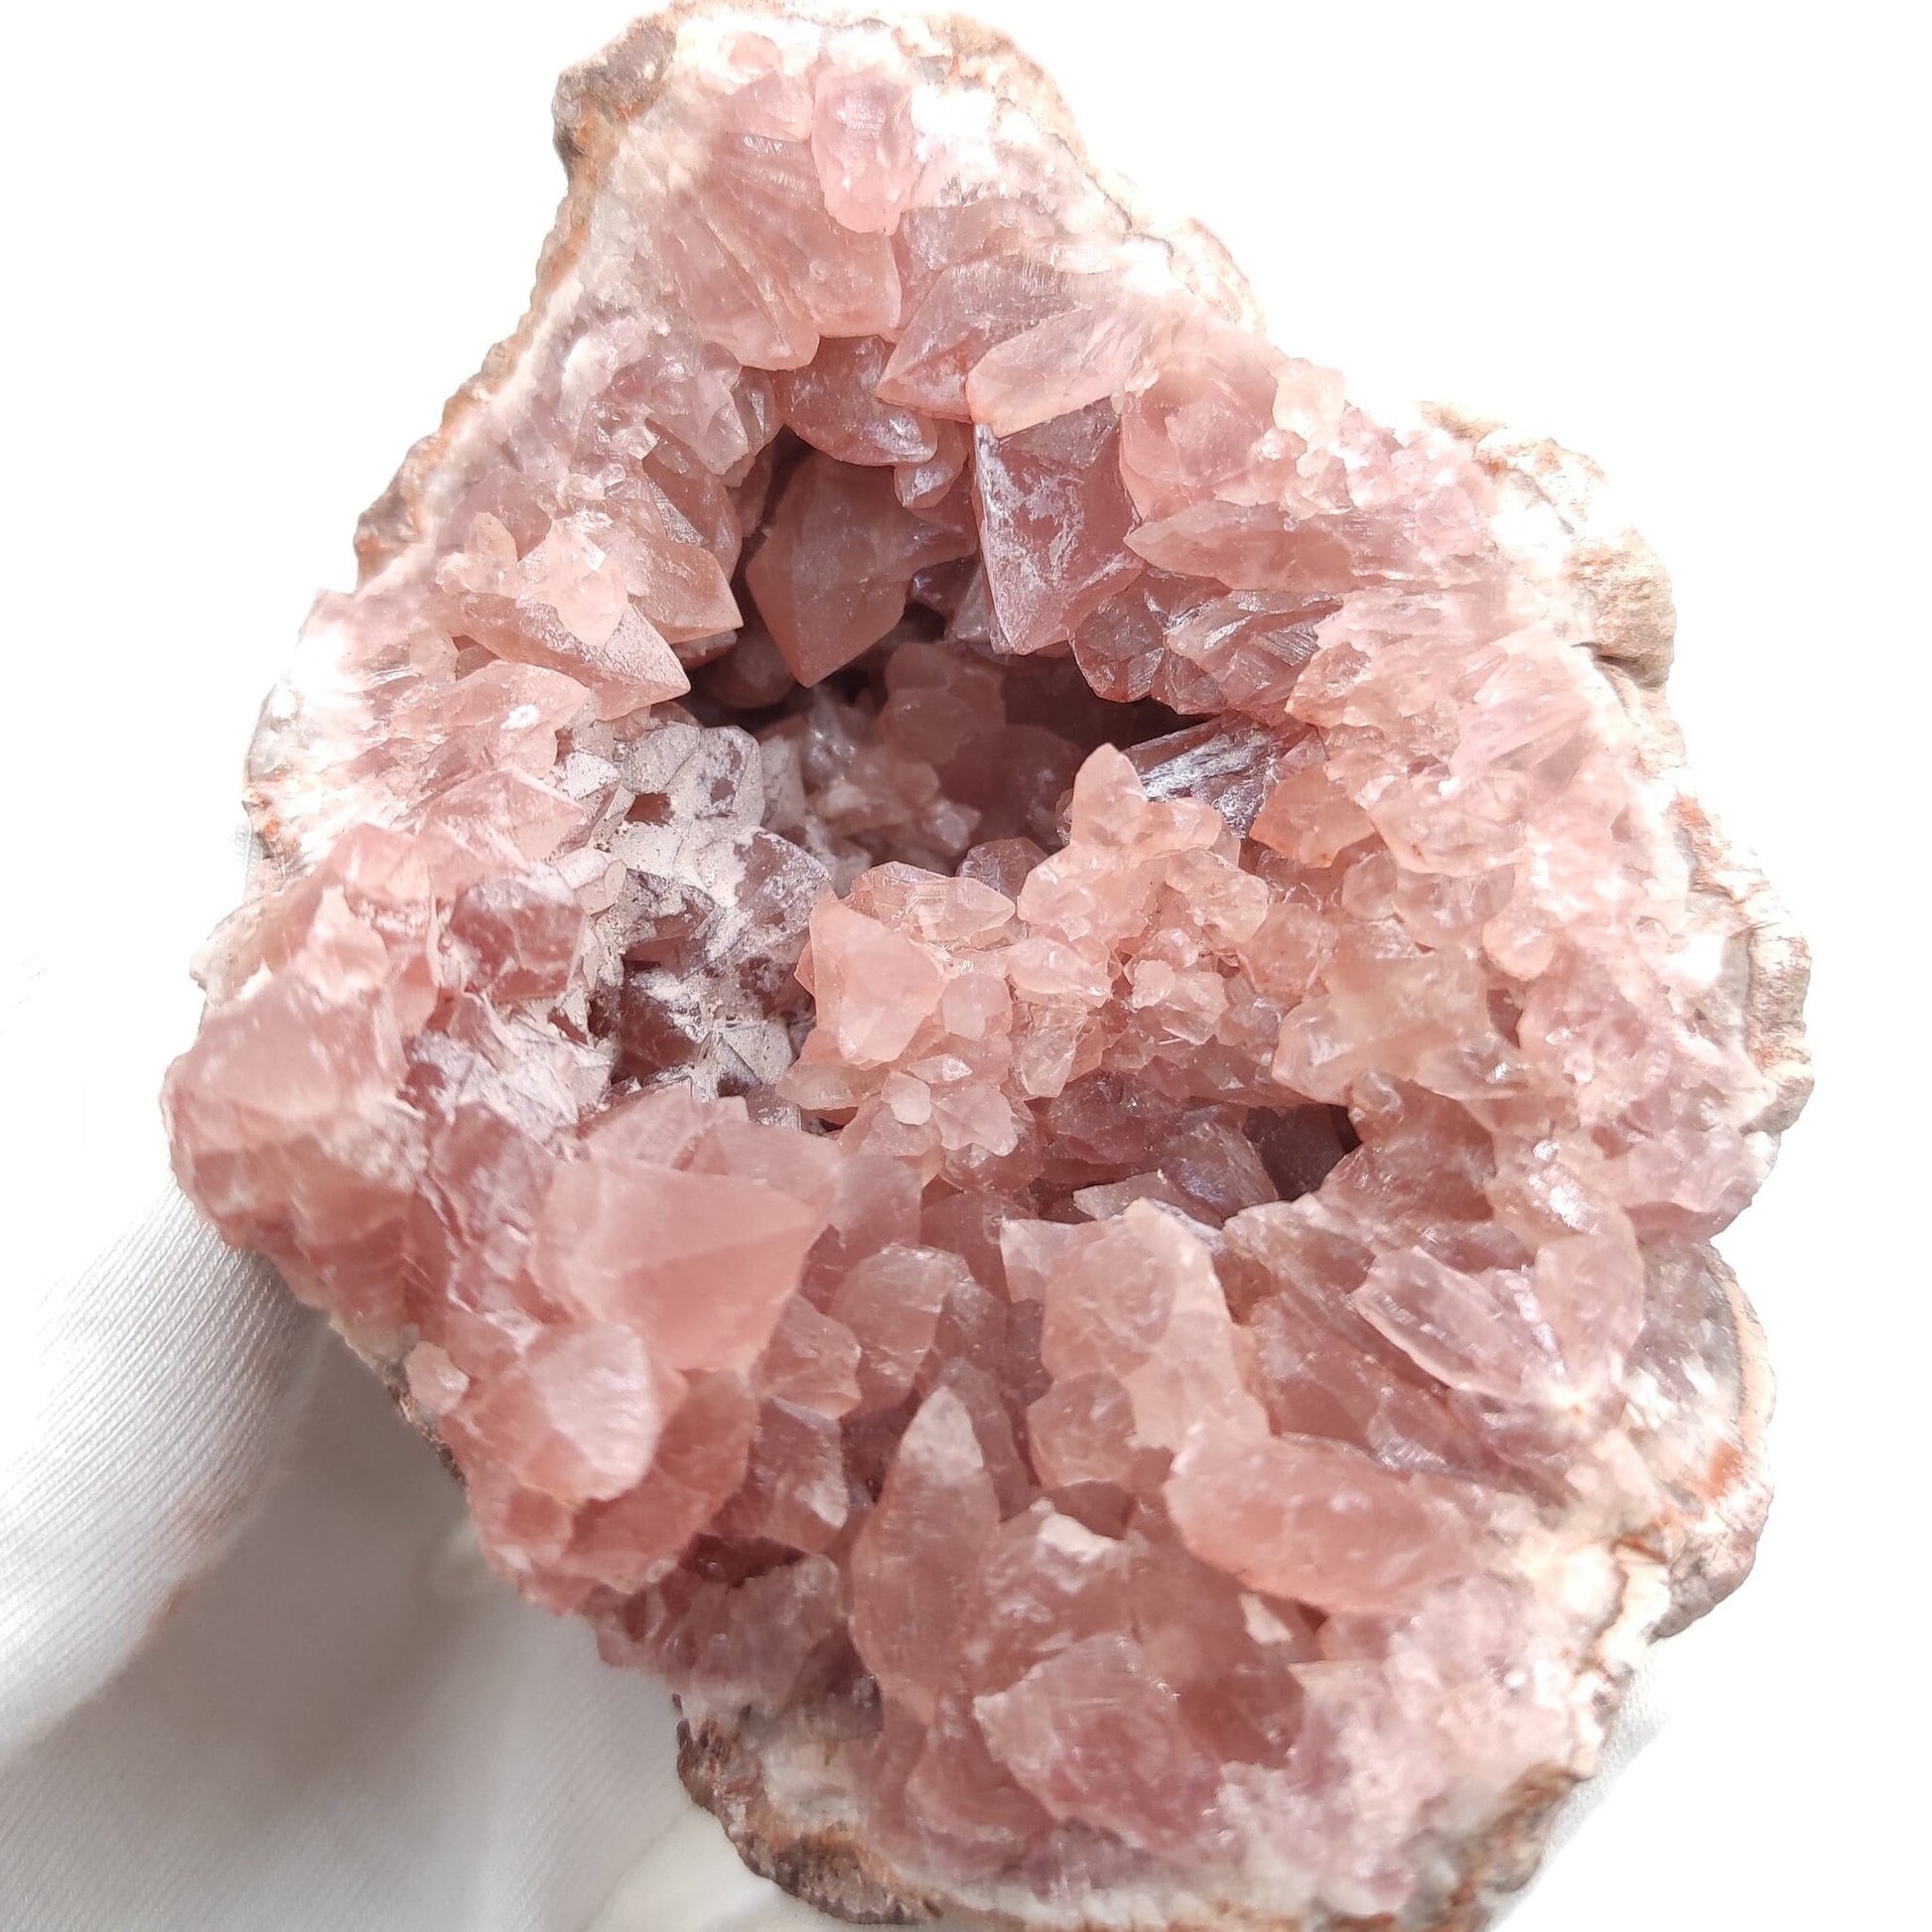 207g Pink Amethyst Geode - Neuquén, Argentina - Natural Raw Pink Amethyst Crystal - Pink Amethyst Geode Cluster - Crystallized Pink Amethyst